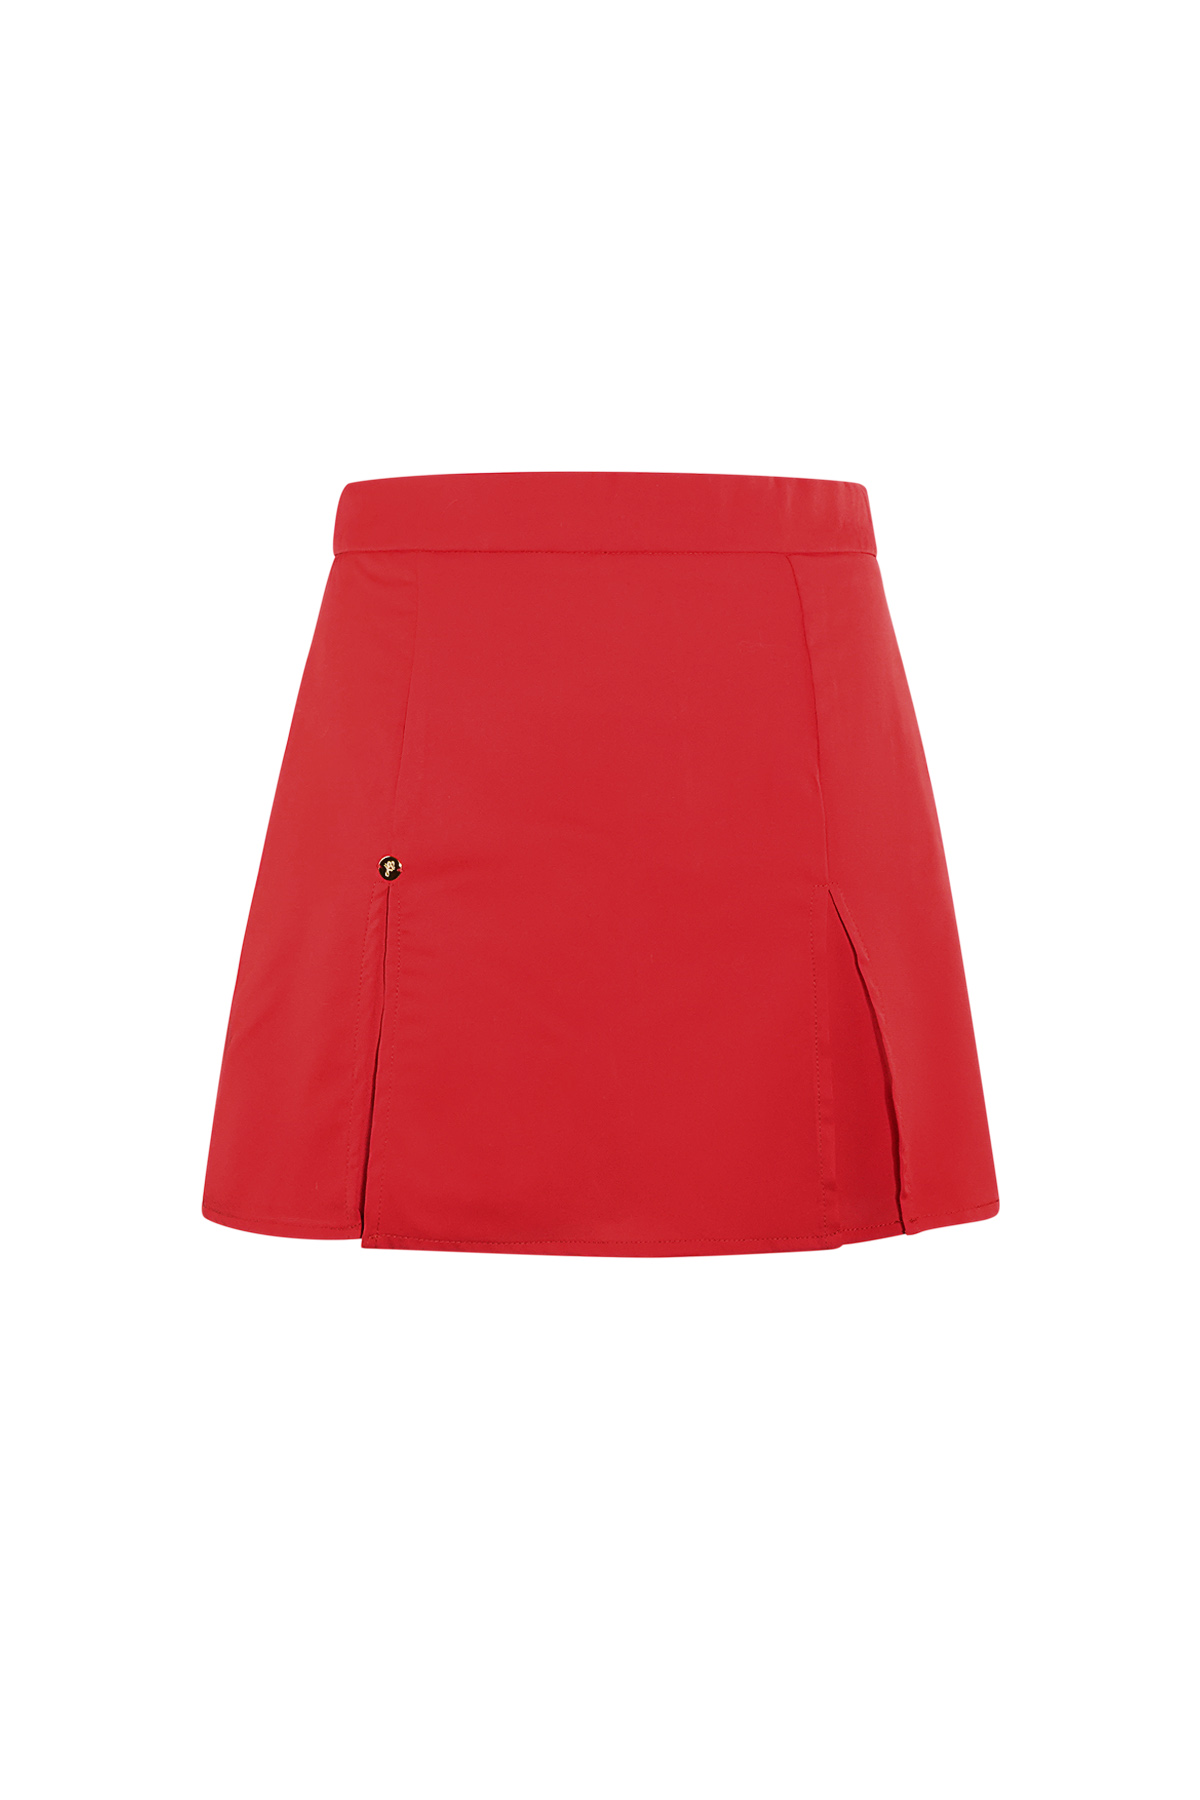 Falda pantalón mini básica pastel - rojo